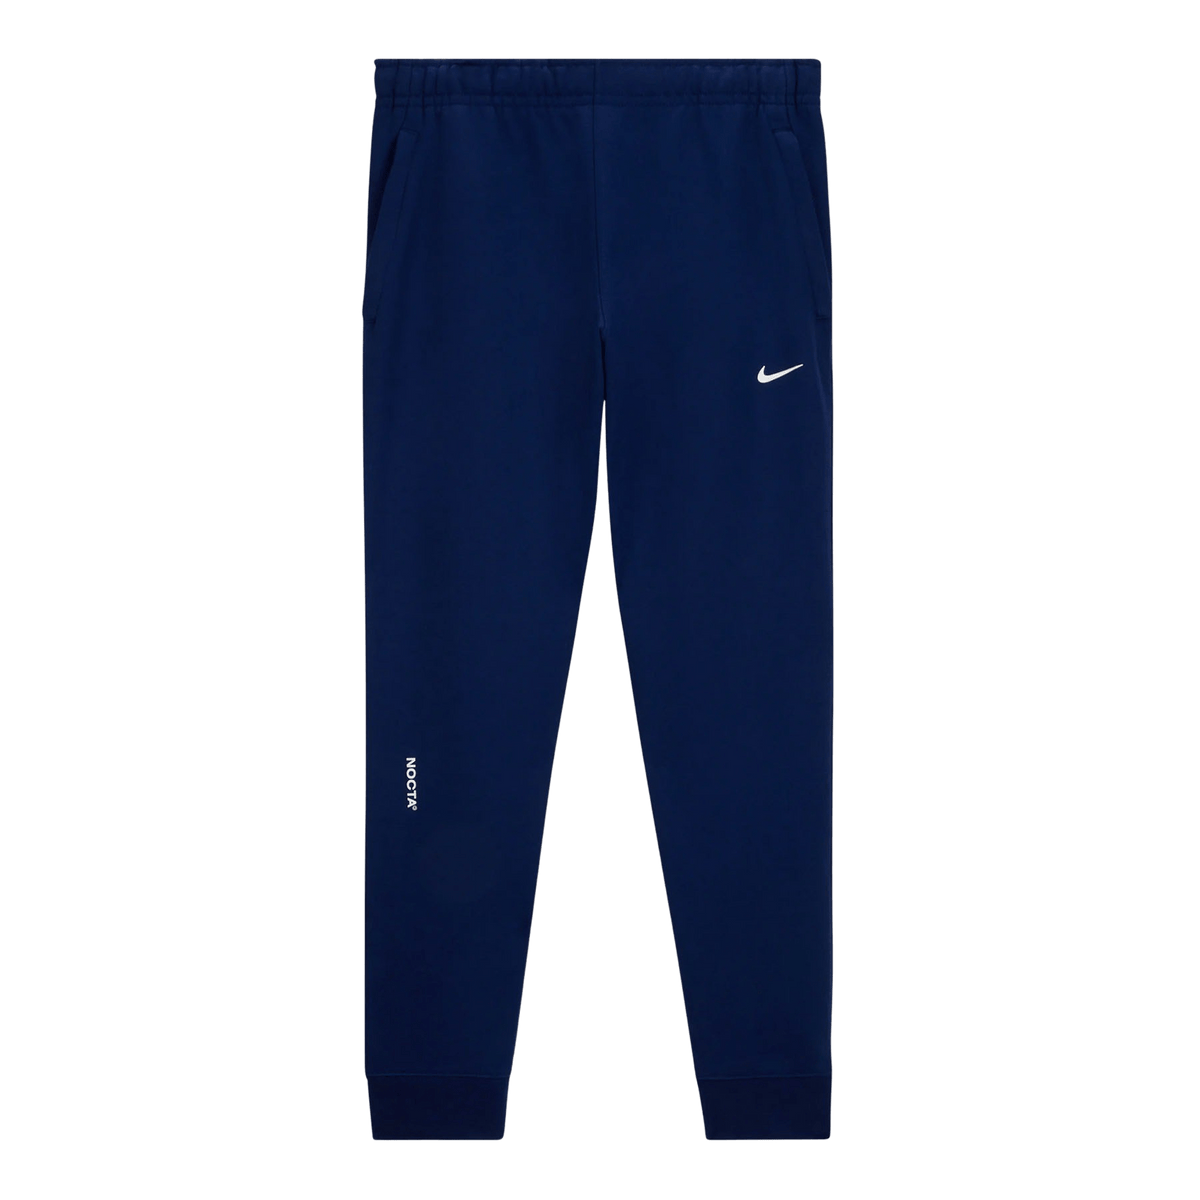 Nike x Drake NOCTA Cardinal Stock Fleece Pants Navy - Kick Game